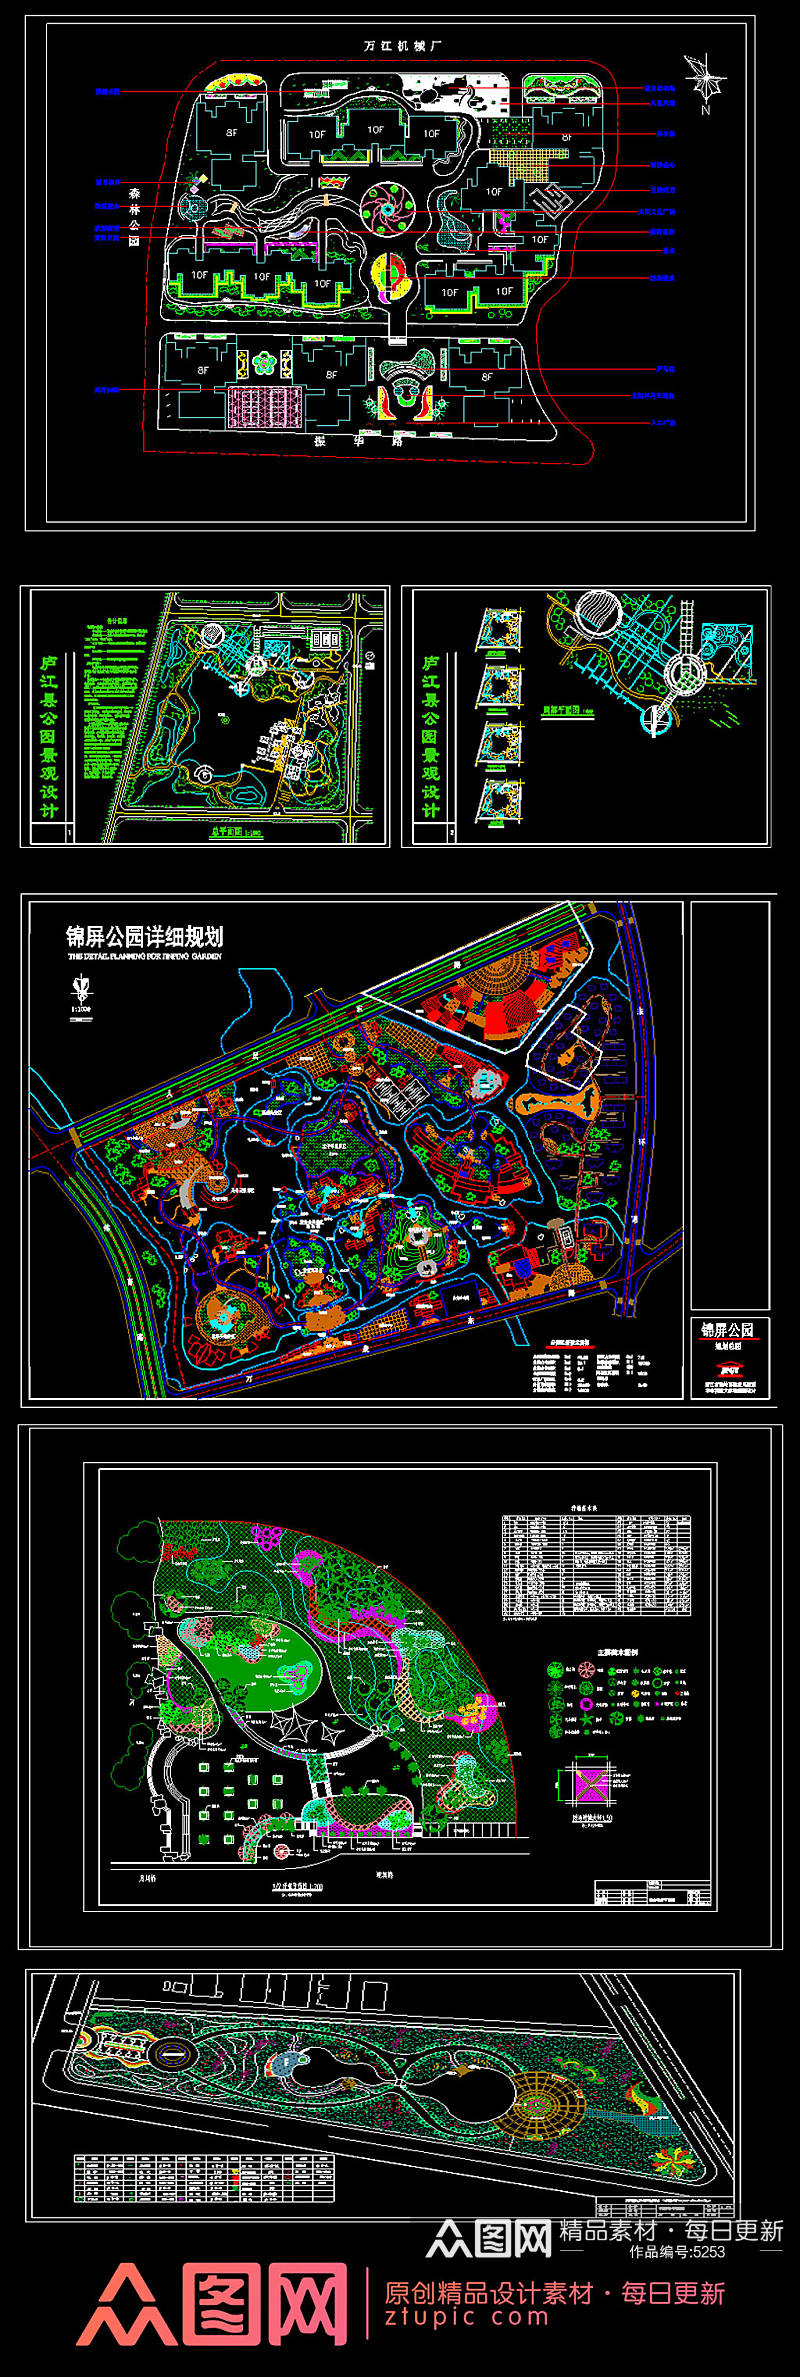 原创各式公园景观设计CAD平面图方案素材